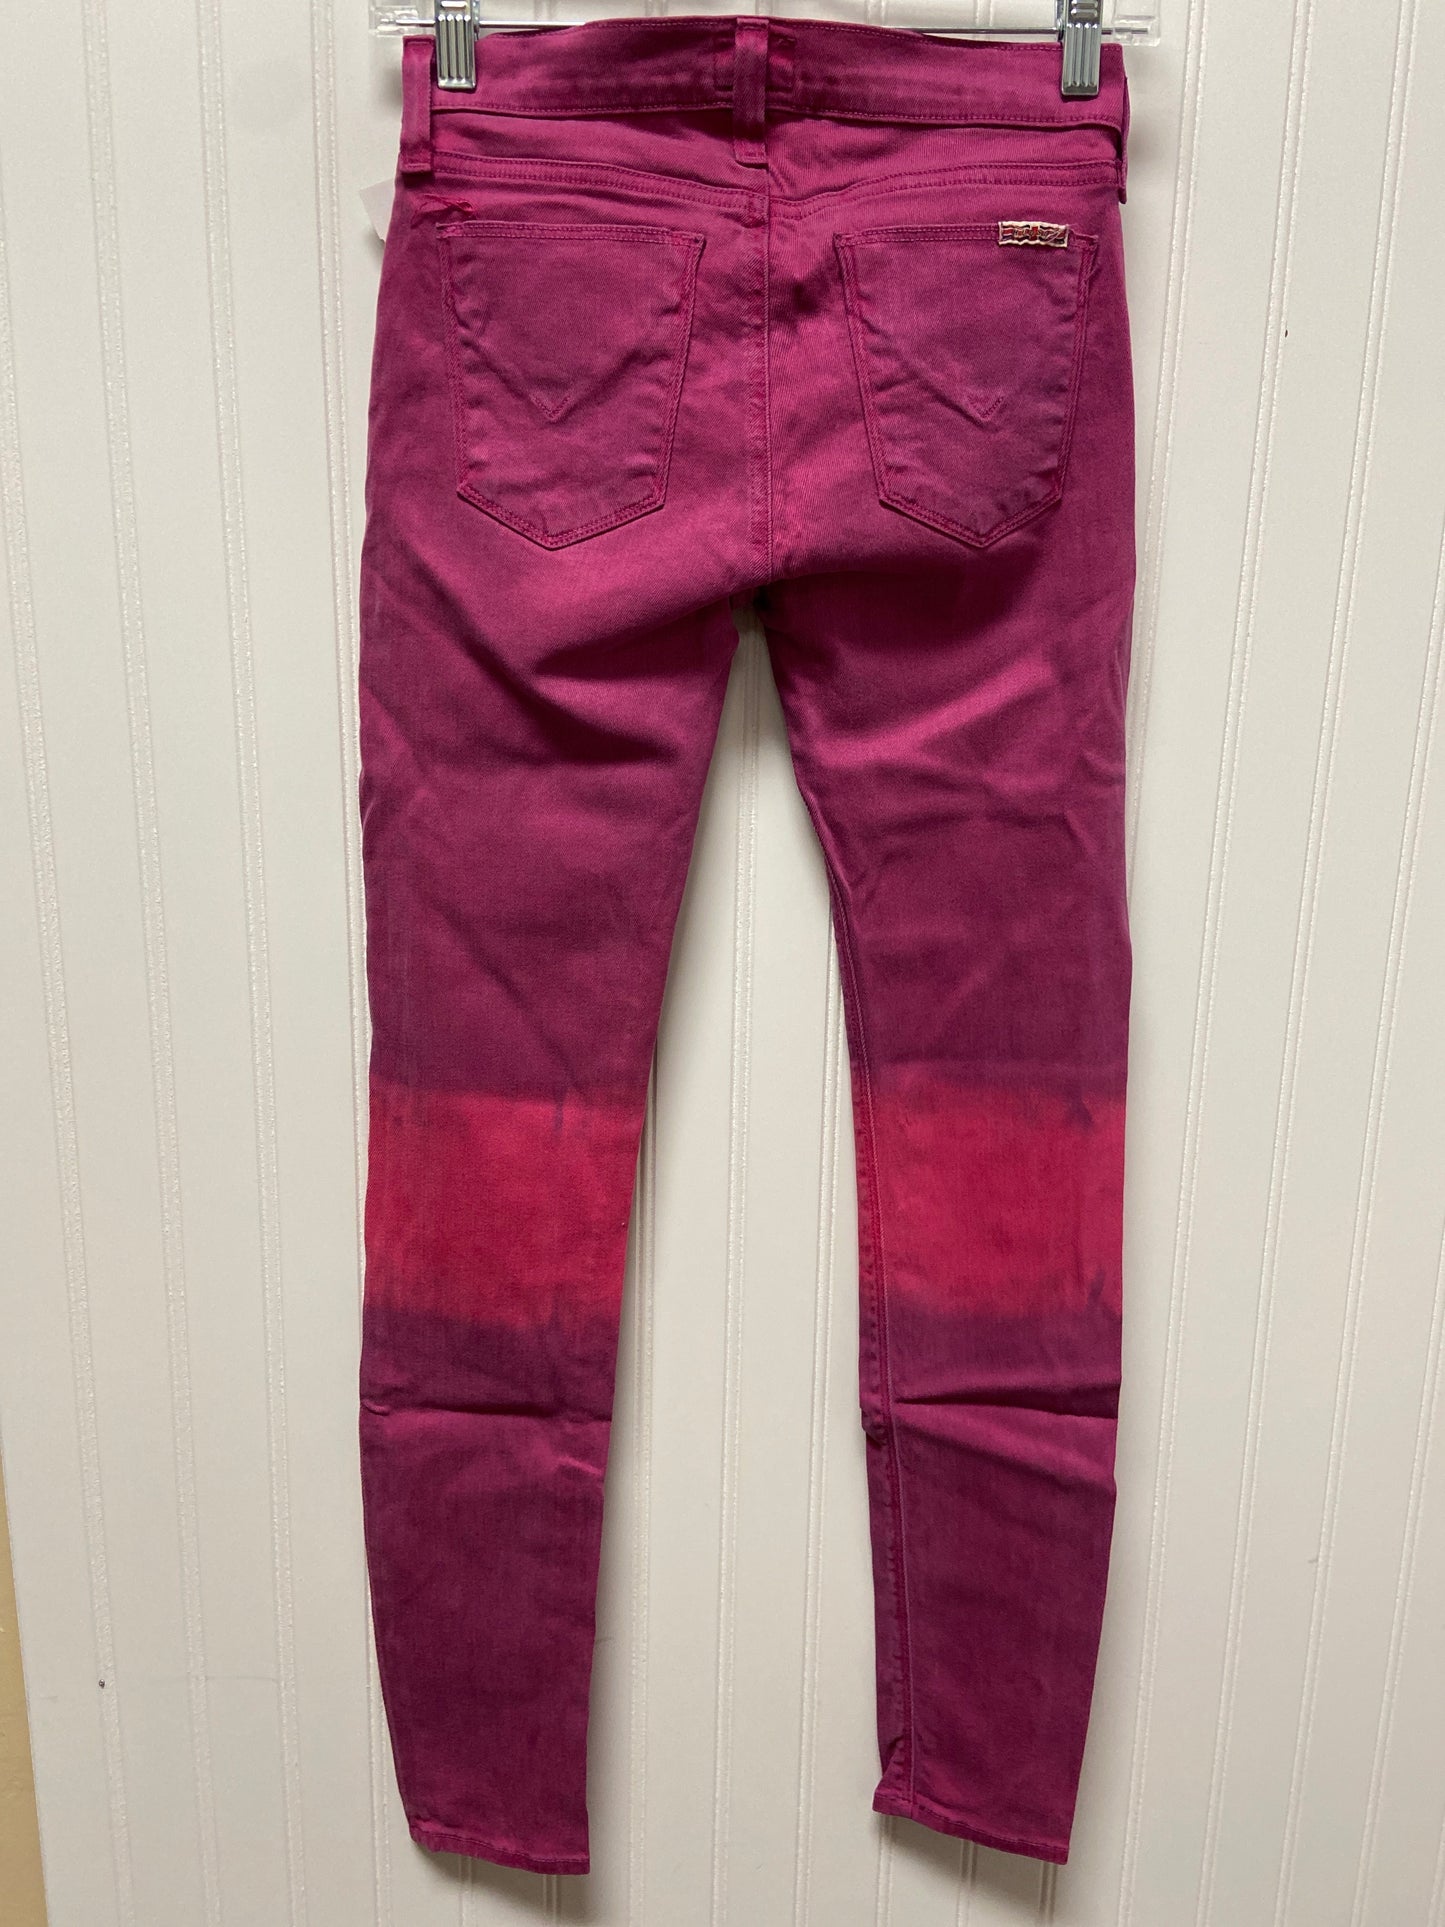 Pink Jeans Designer Hudson, Size 2